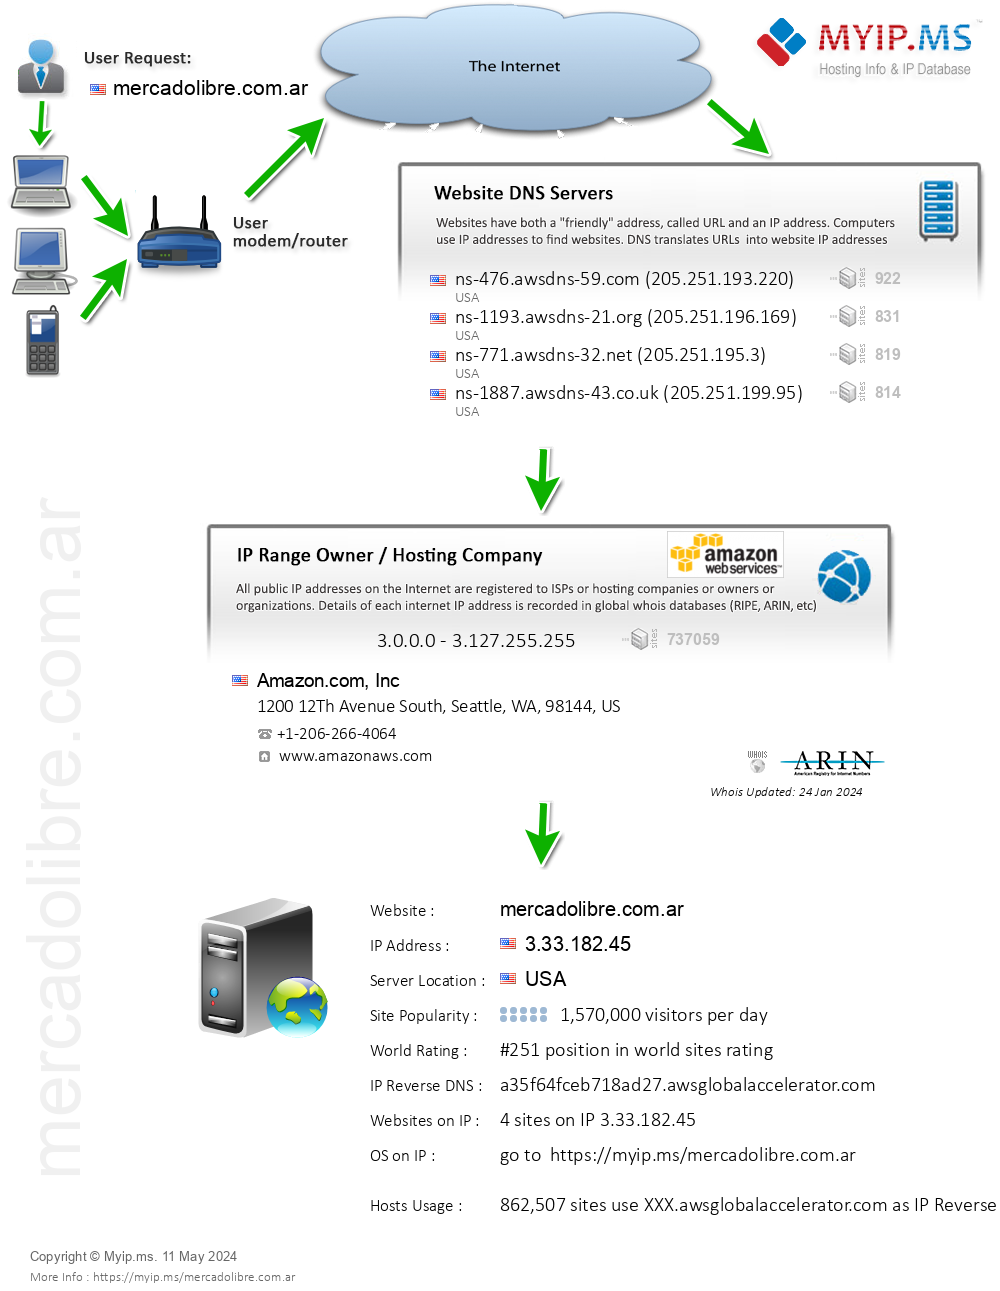 Mercadolibre.com.ar - Website Hosting Visual IP Diagram